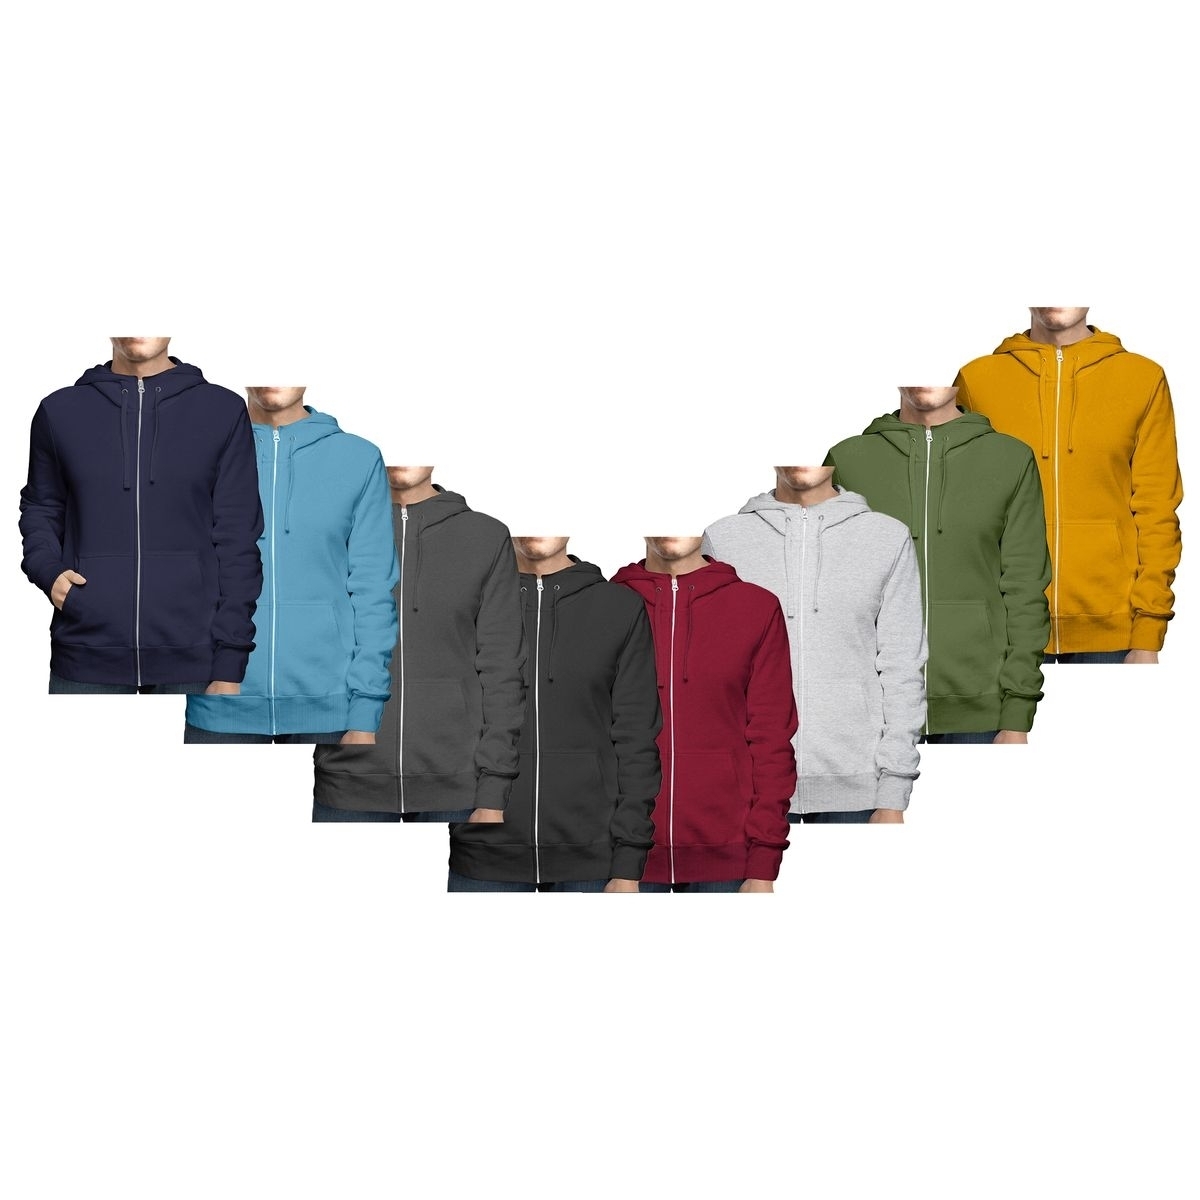 Men's Winter Warm Cozy Full Zip-Up Fleece Lined Soft Hoodie Sweatshirt - Black, Large